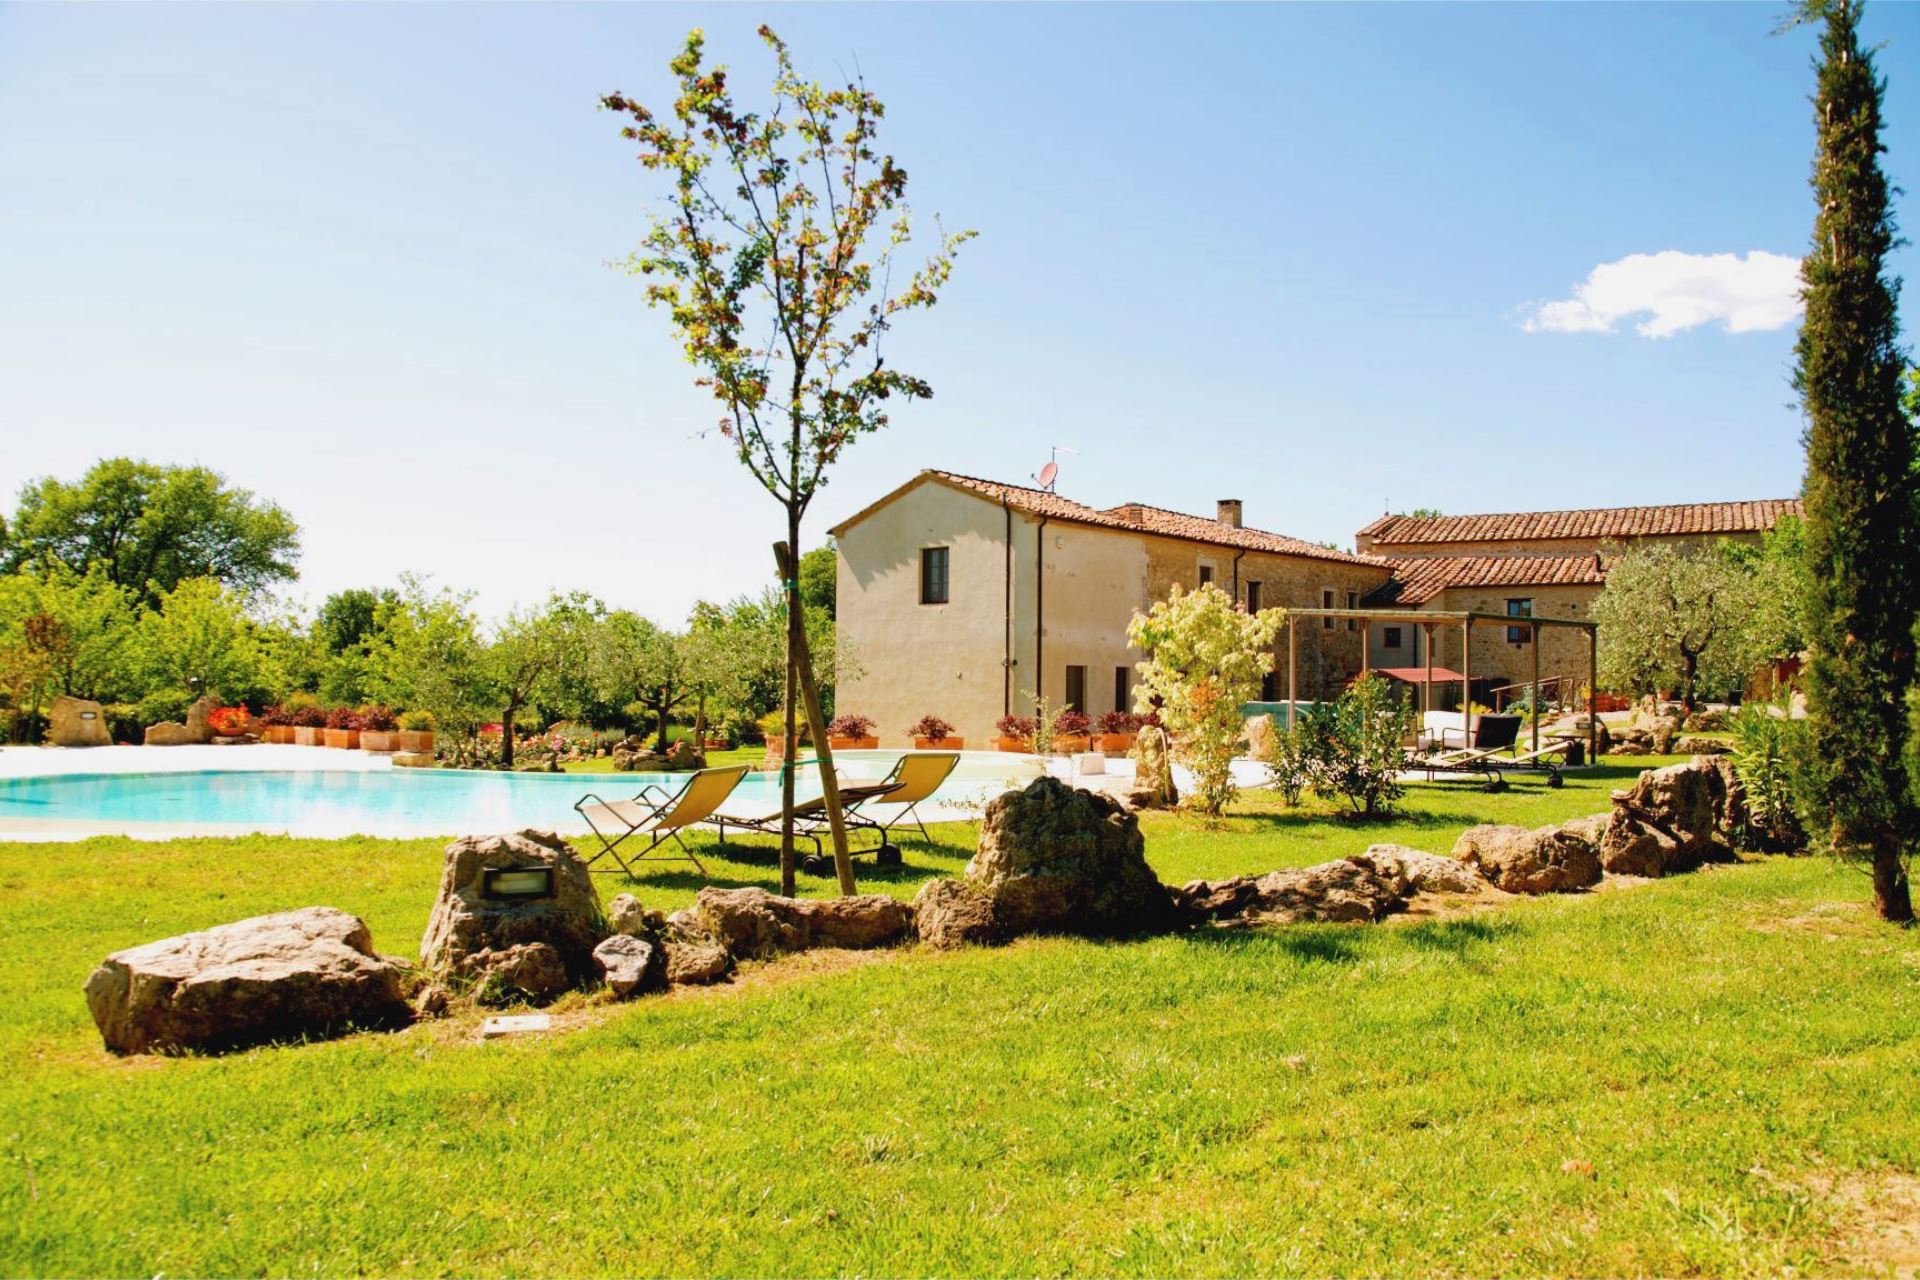 421_75c392f_Agriturimso, vakantiehuis met privÃ© zwembad, Toscane, Asciano, Val D'Orcia (23)